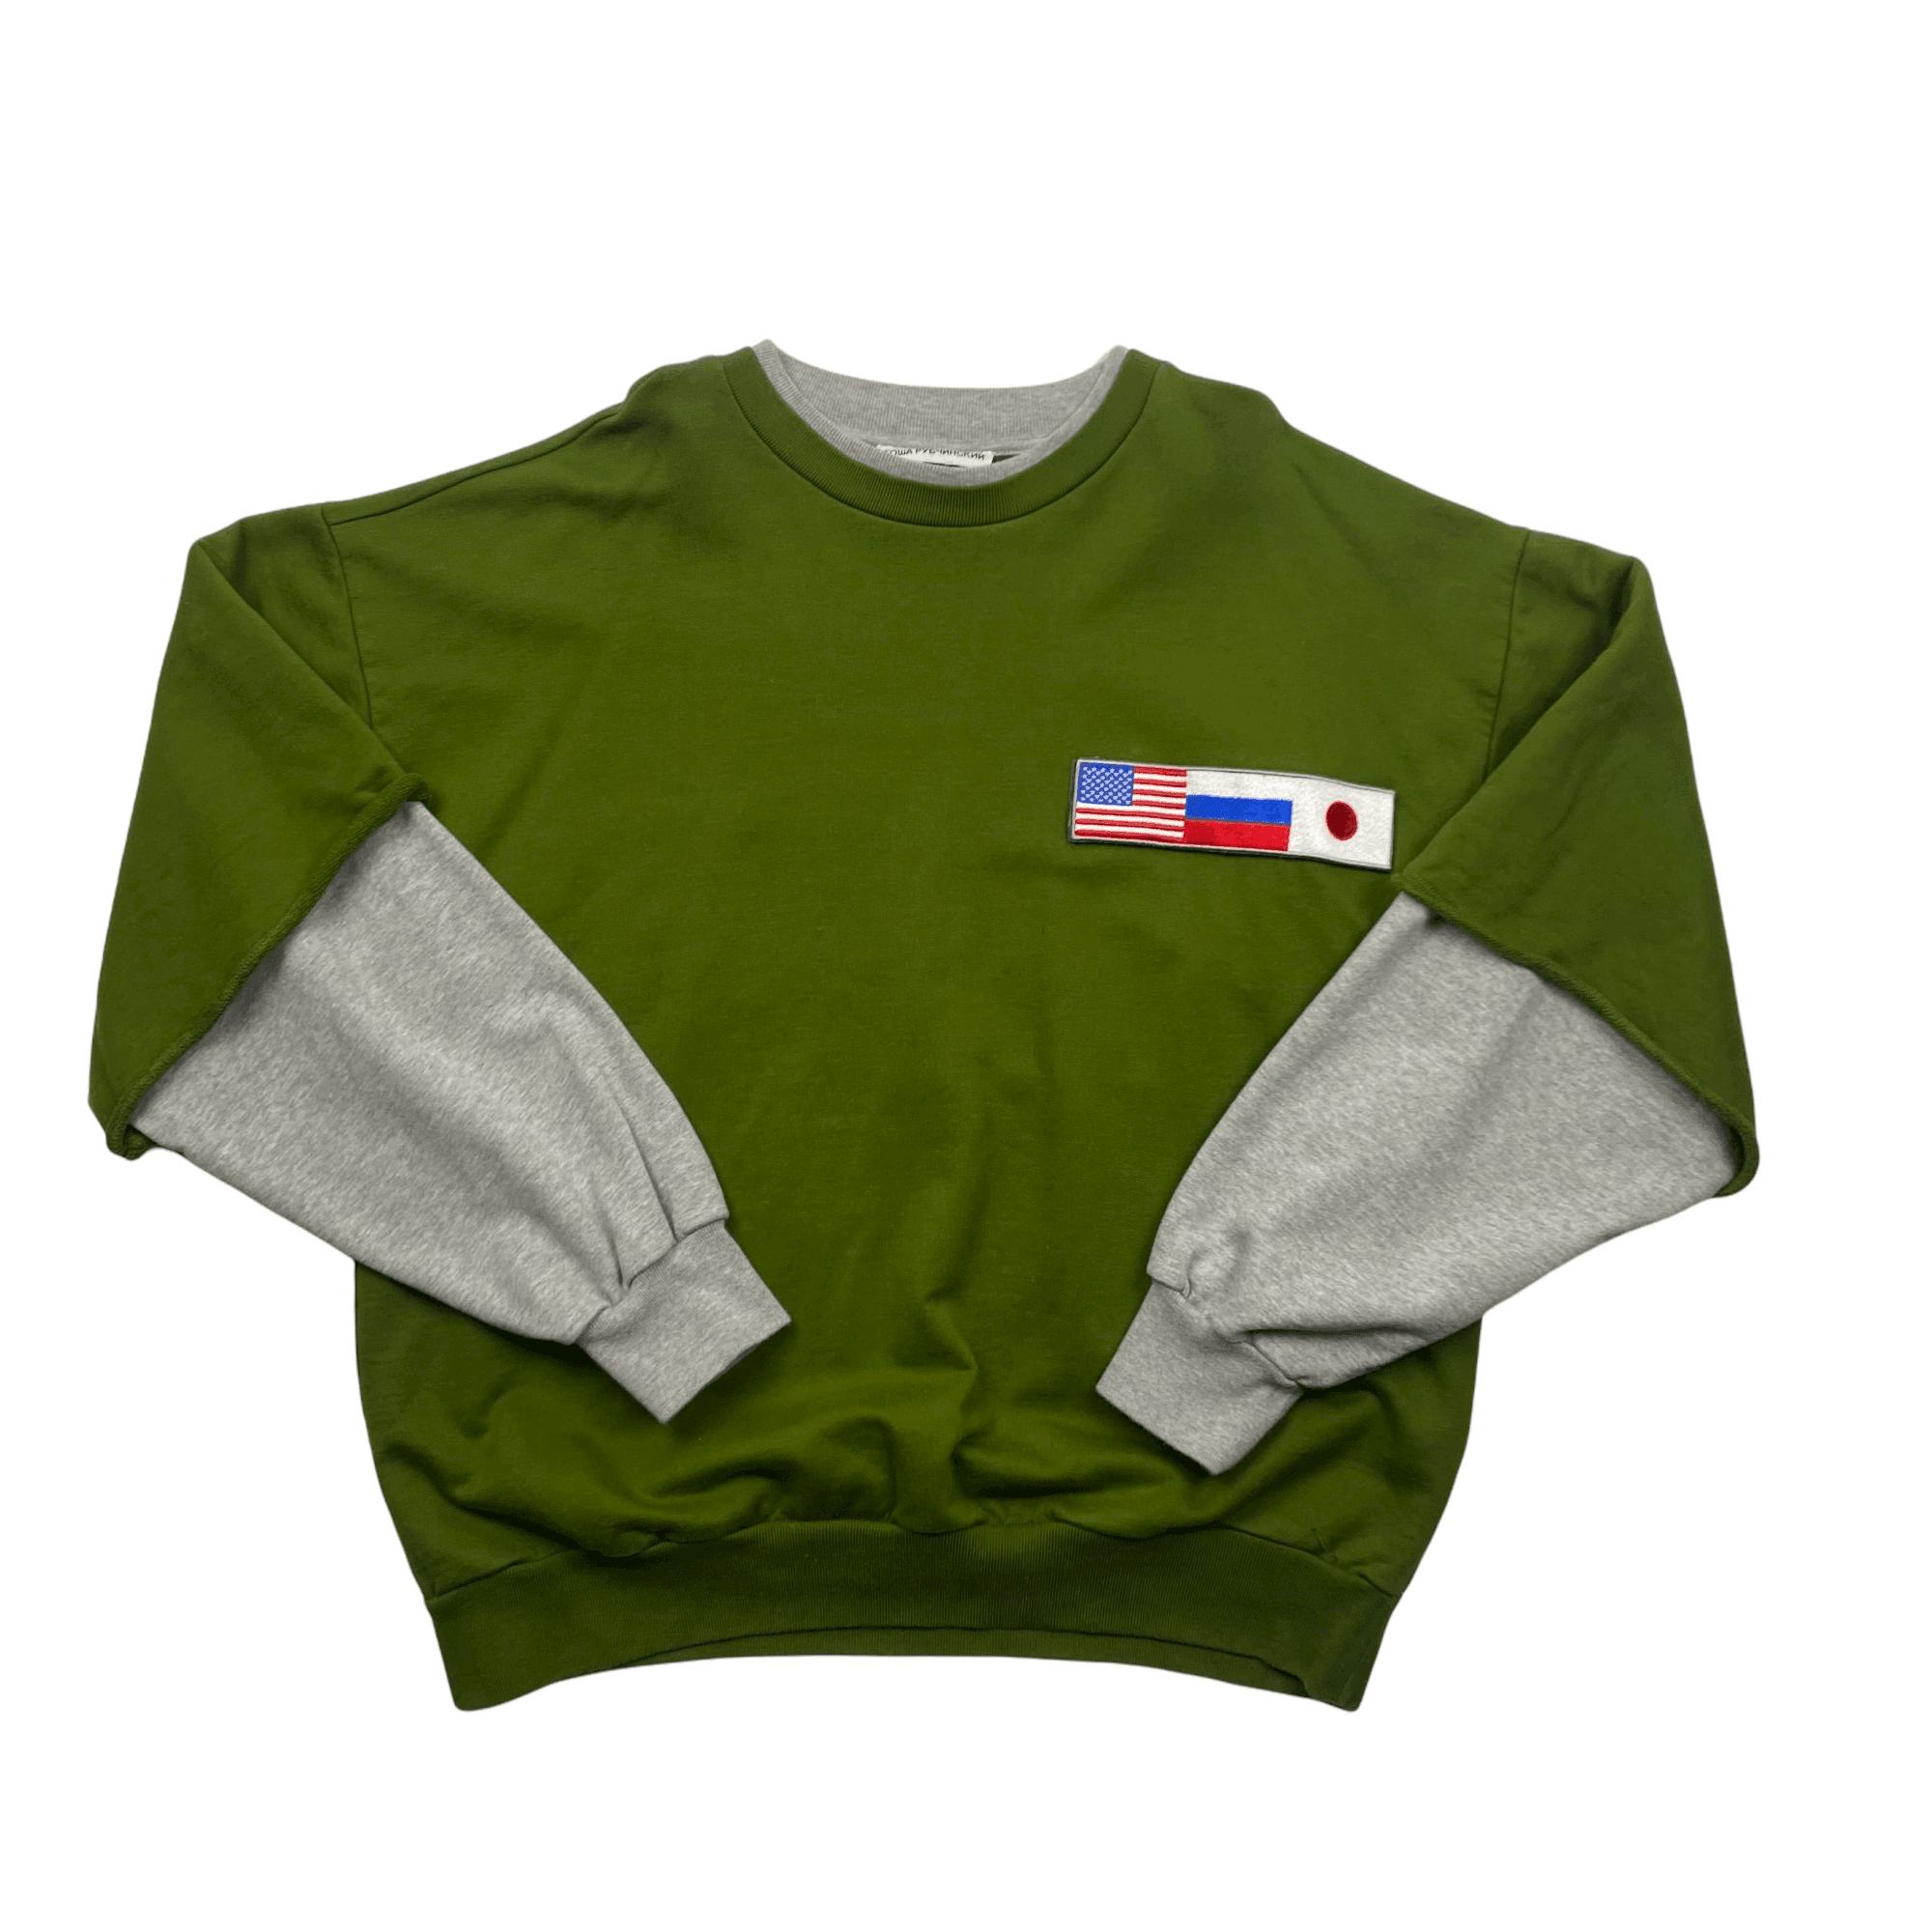 Green + Grey Gosha Rubchinskiy Oversized Double Sleeve Sweatshirt - Large